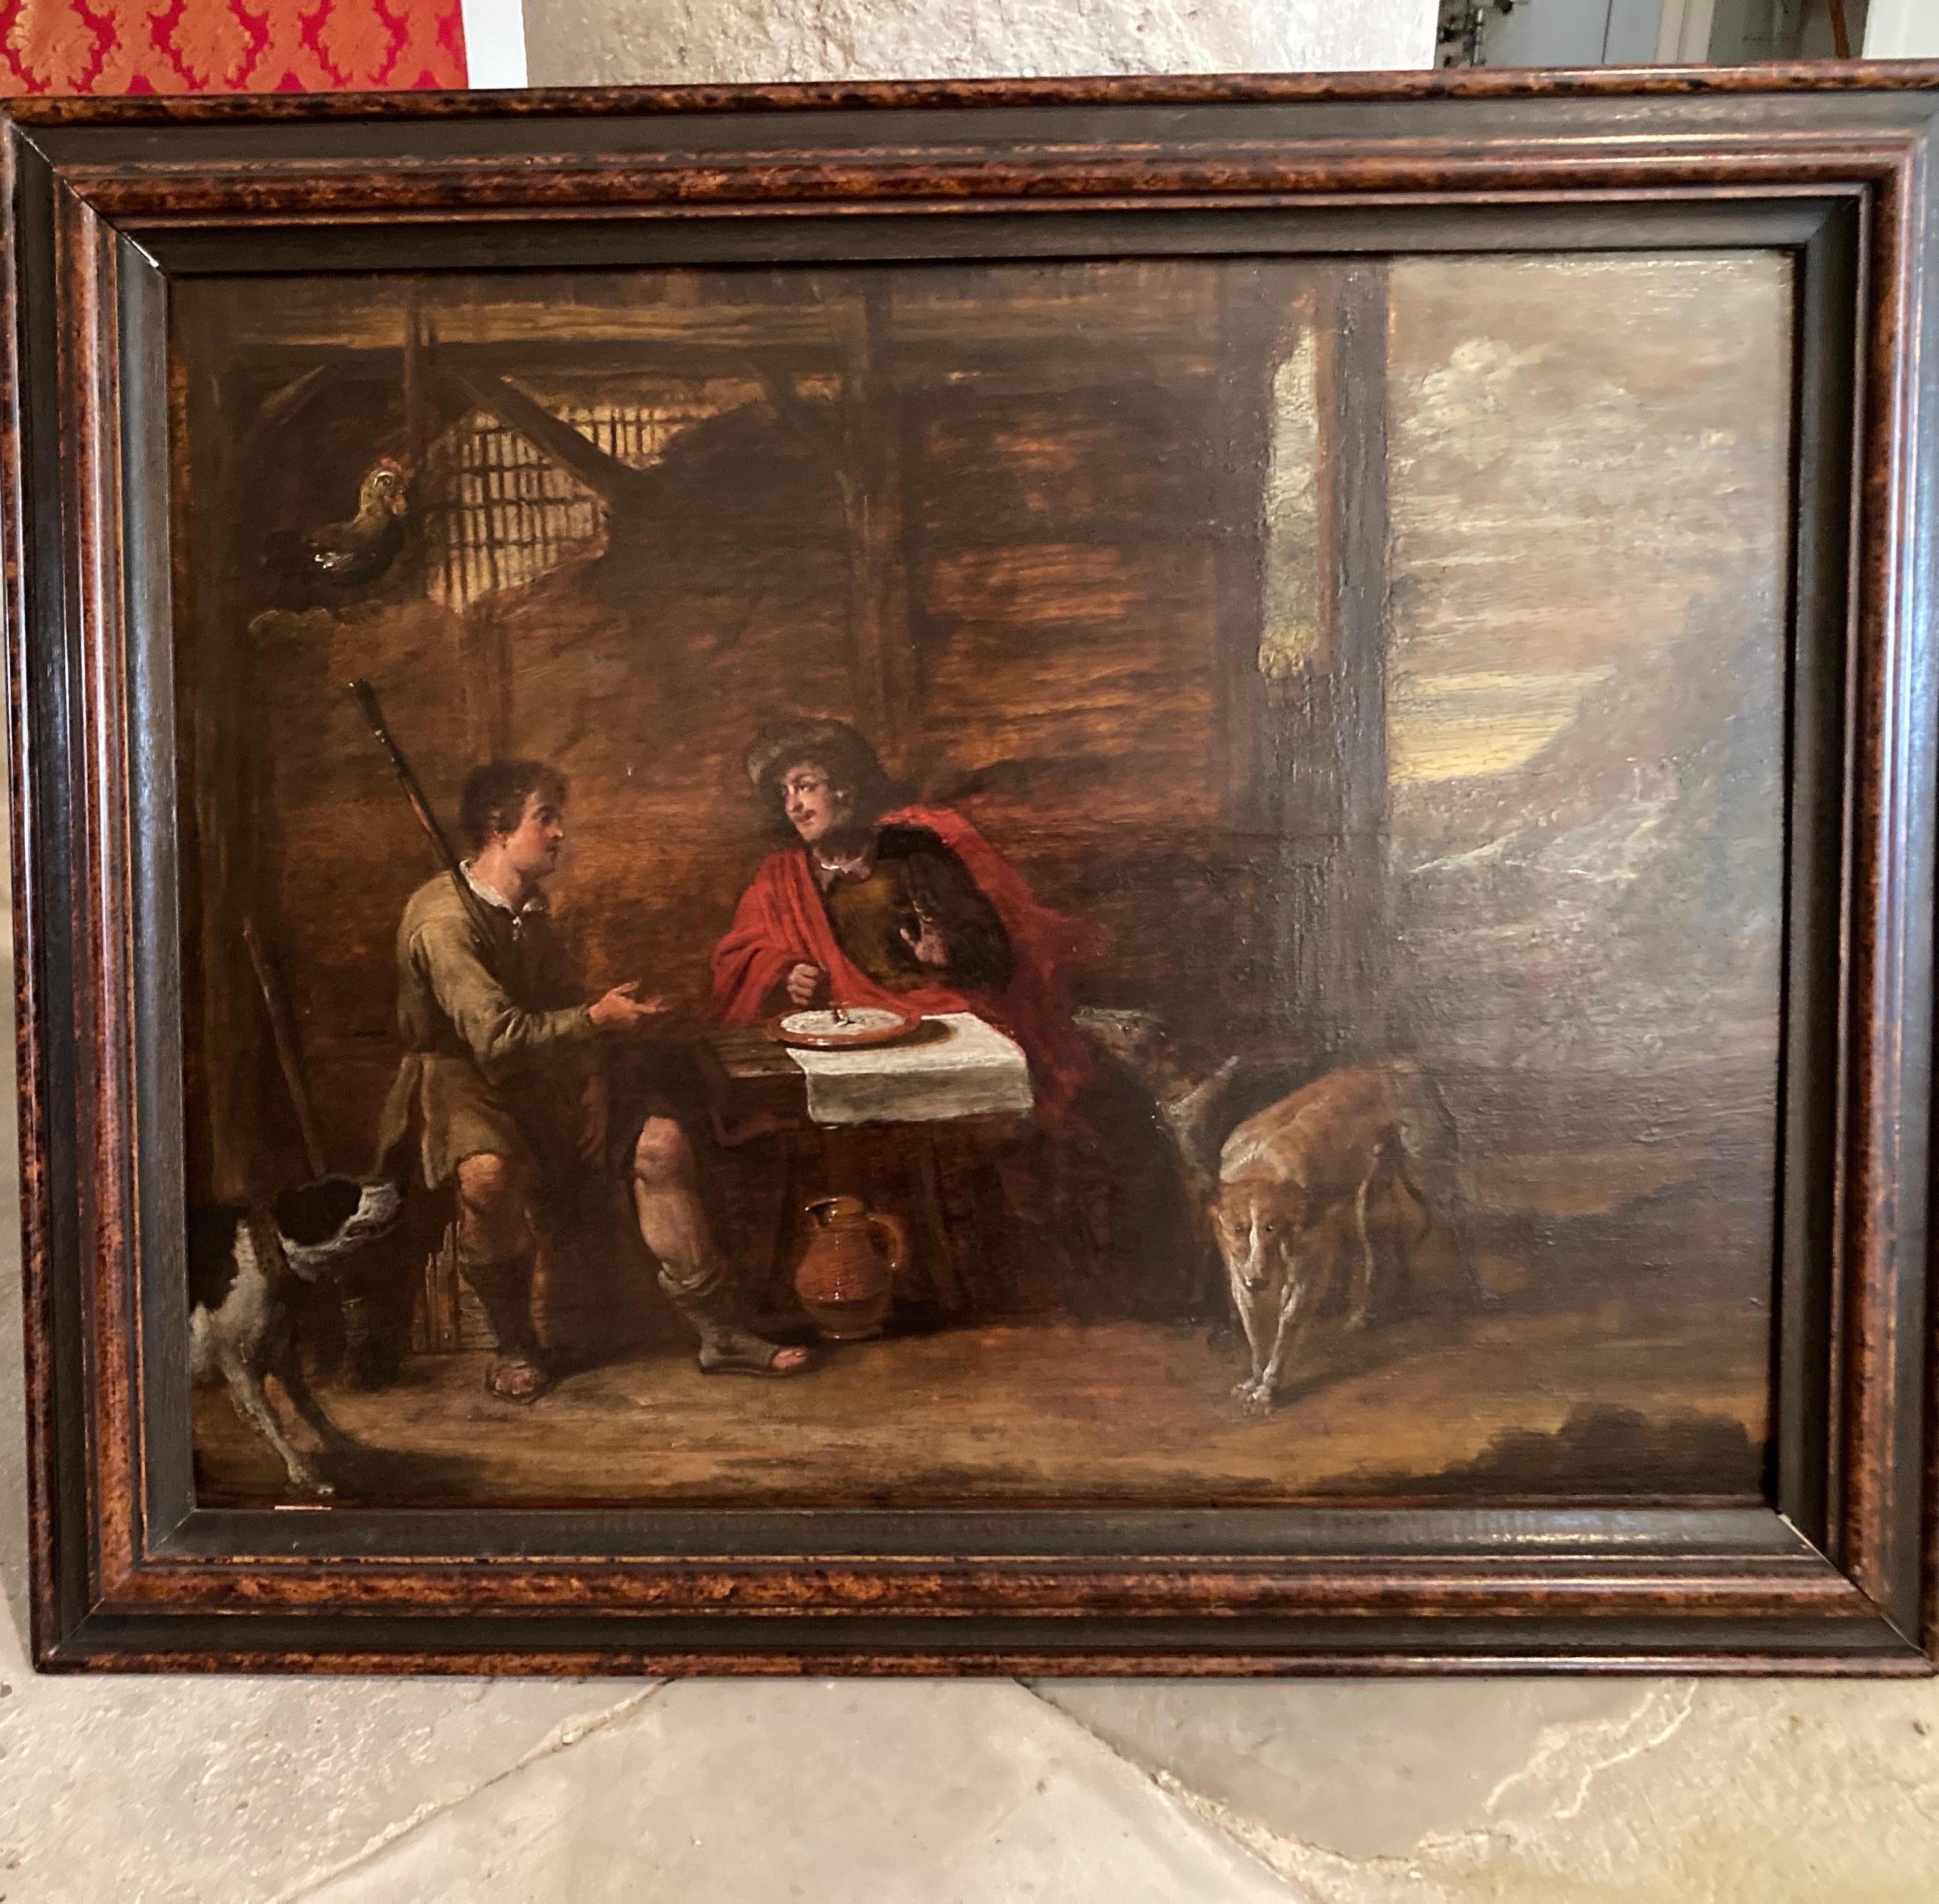 Gemälde Alter Meister, Flämischer Barock, Religiöse Szene, Esau und Jakob, Linse  – Painting von Erasmus Quellinus the Younger